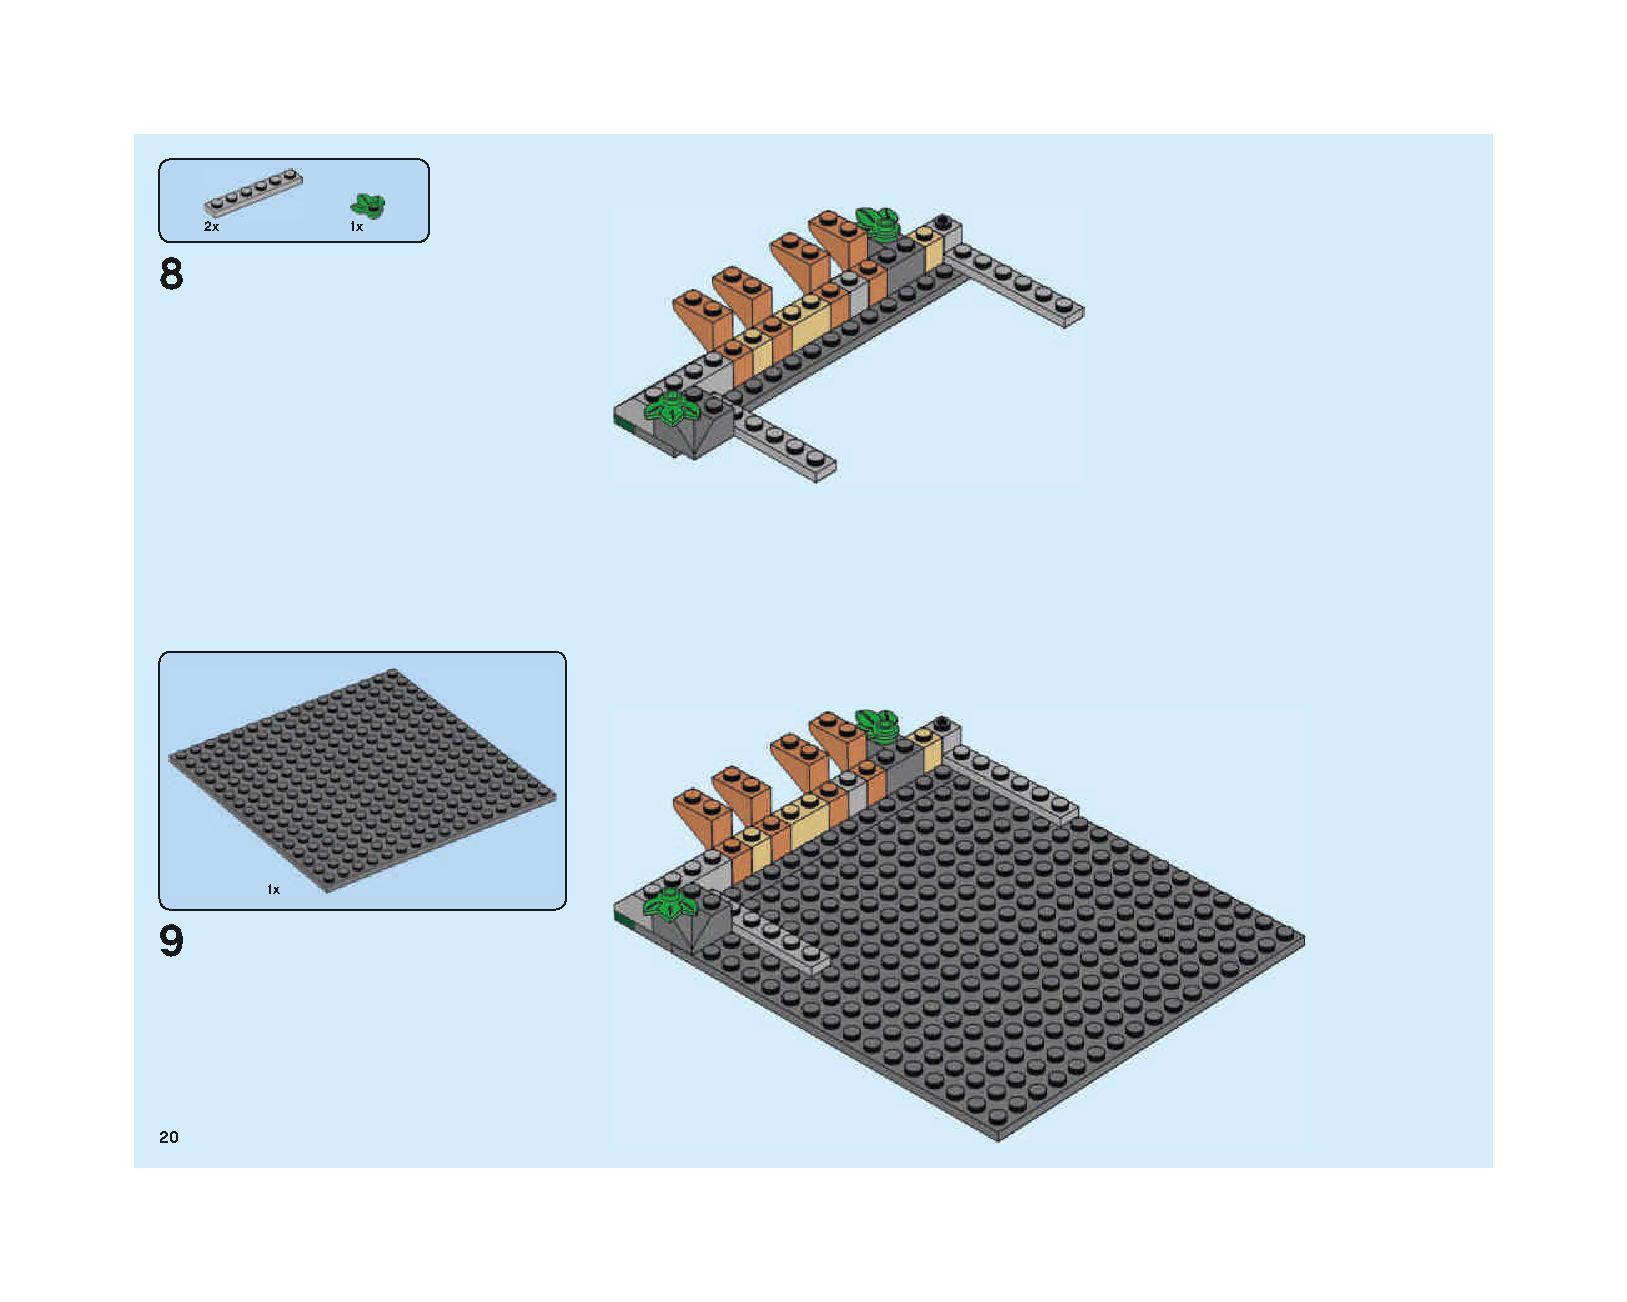 ホグワーツの大広間 75954 レゴの商品情報 レゴの説明書・組立方法 20 page